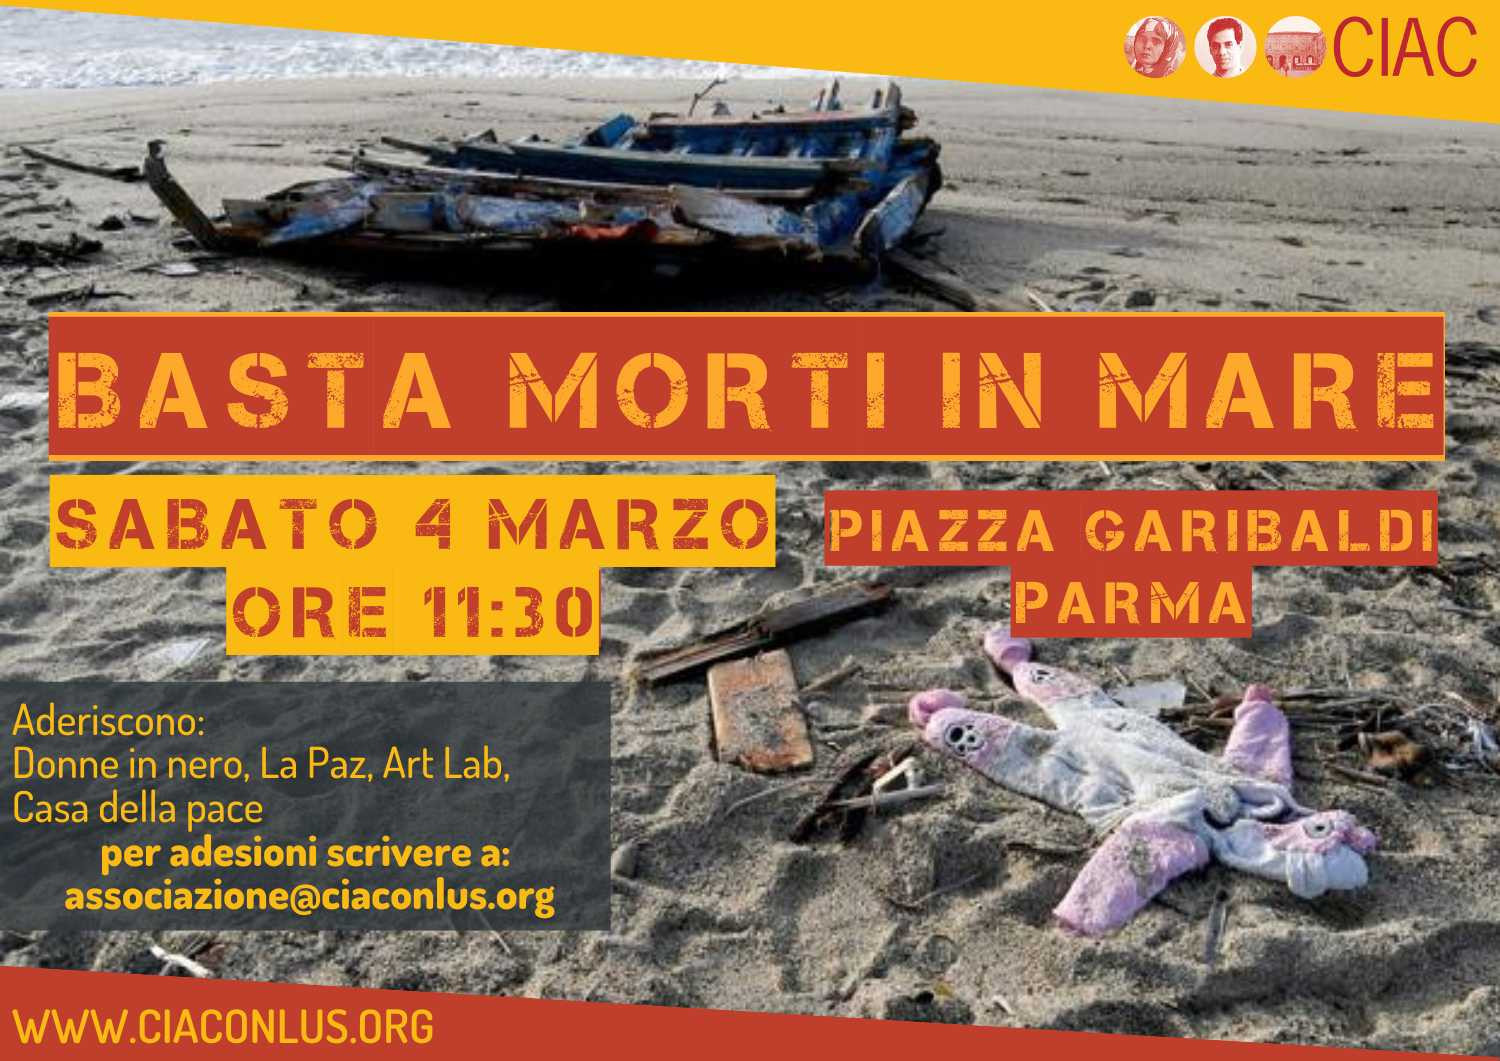 Parma scende in piazza per dire ‘Basta morti in mare’. Presidio sabato 4 marzo alle 11:30 in piazza Garibaldi